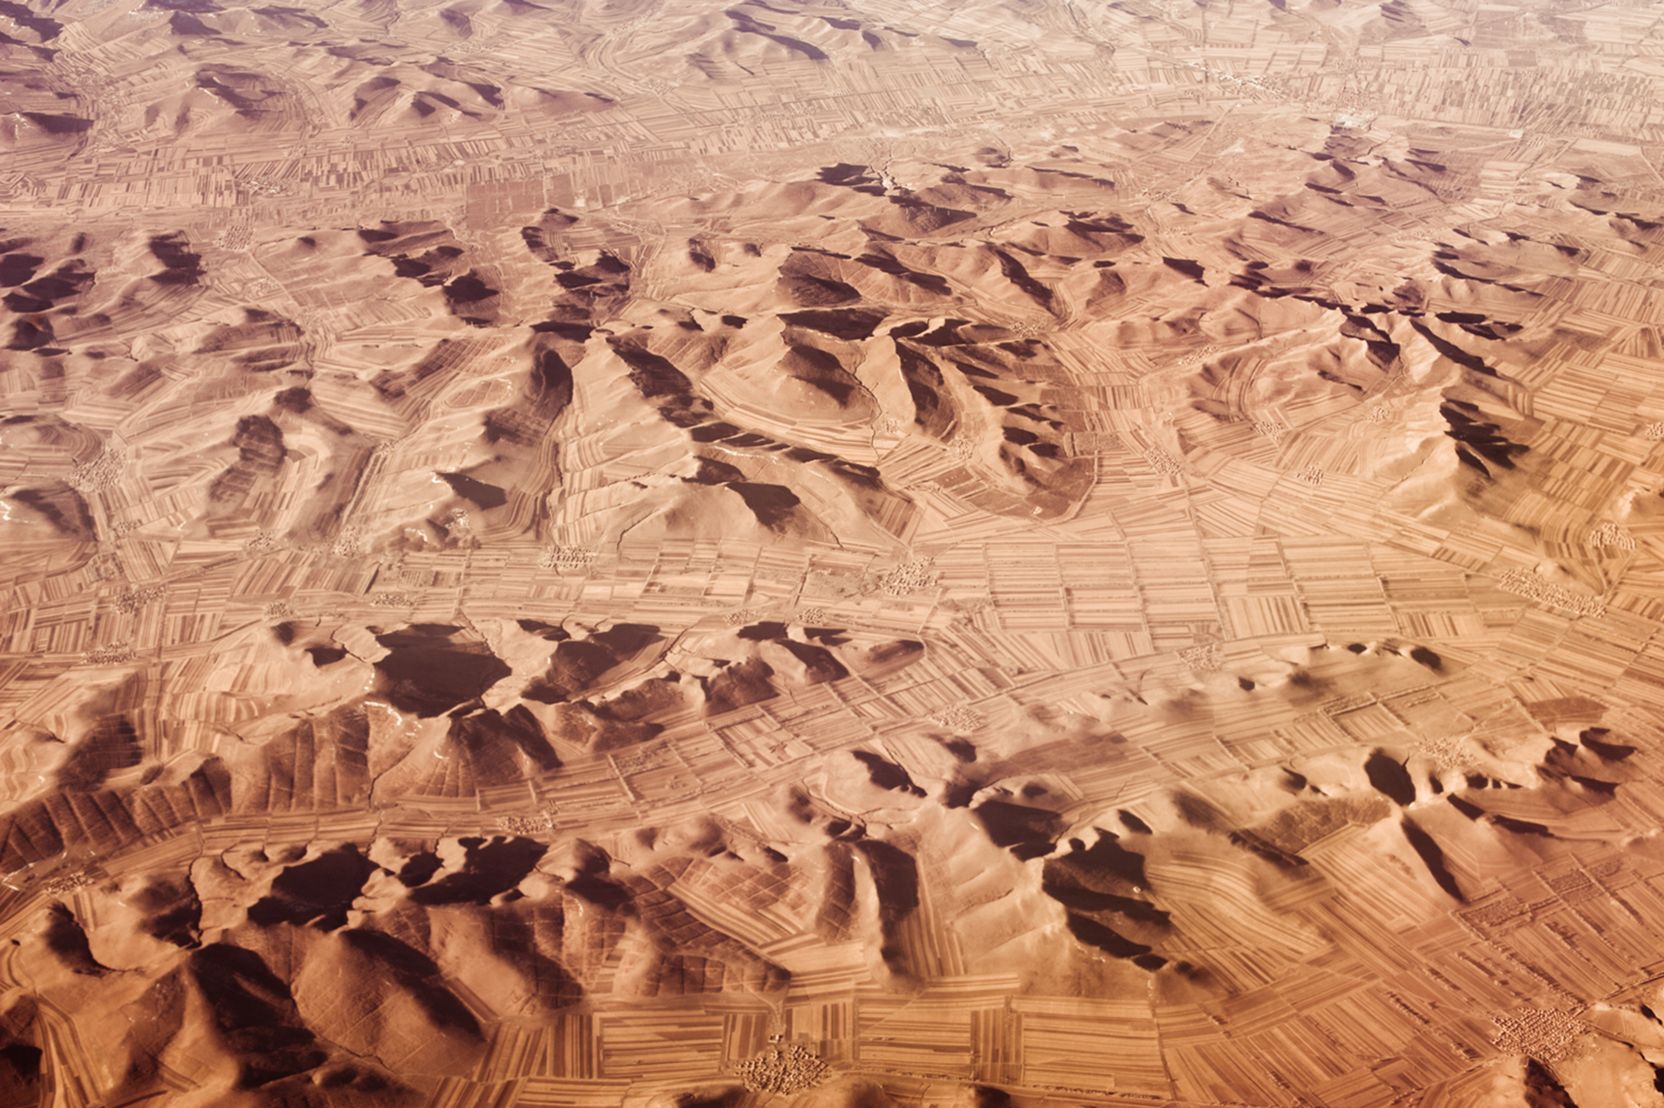 Luftbildaufnahme einer sandigen, bergigen Landschaft mit Strukturen, die Felder und Dörfer vermuten lassen